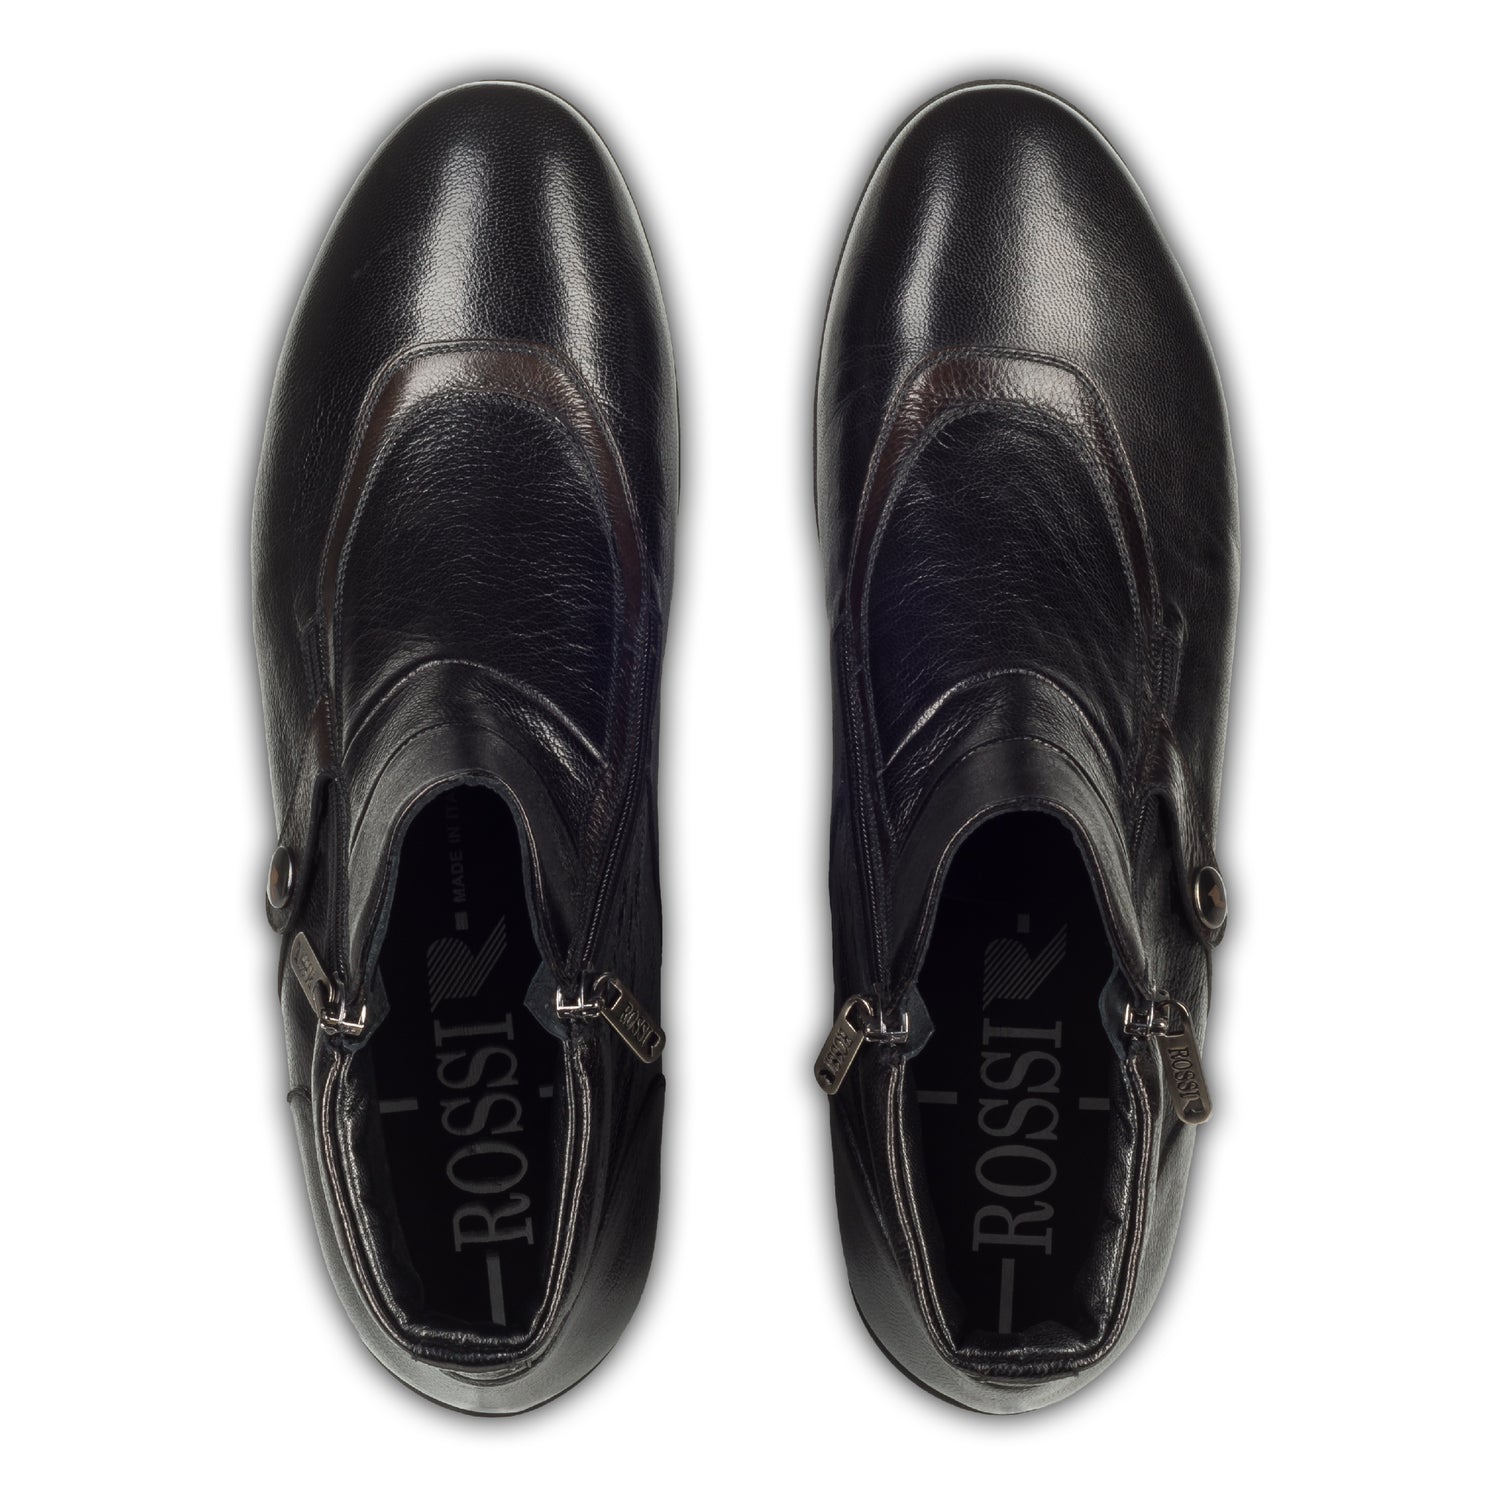 Rossi Herren Leder Sneaker Stiefel in schwarz, mit Reißverschluß. Aus Kalbsleder handgefertigt. Paarweise eigene Draufsicht aus angezogener Perspektive.